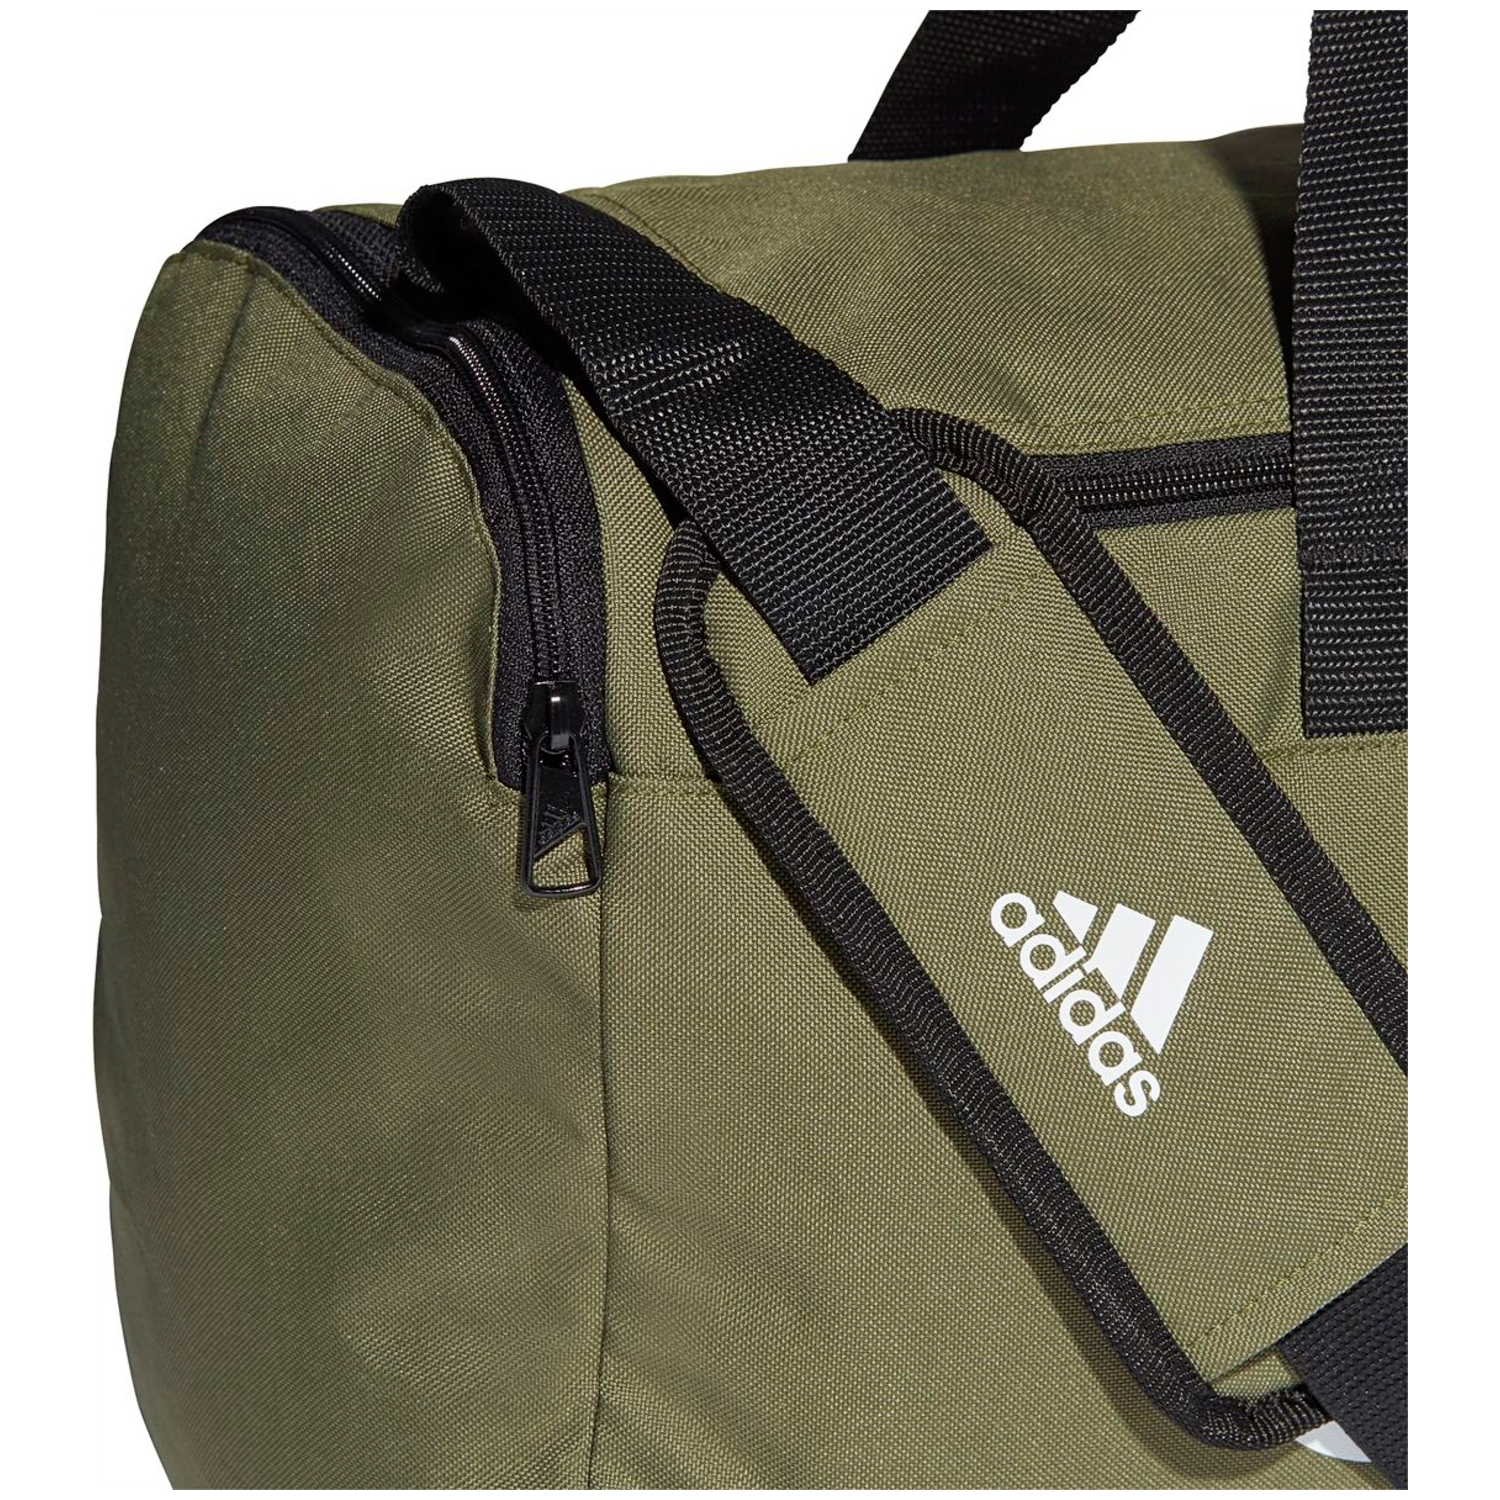 Adidas Essentials Logo Duffelbag Medium Unisex